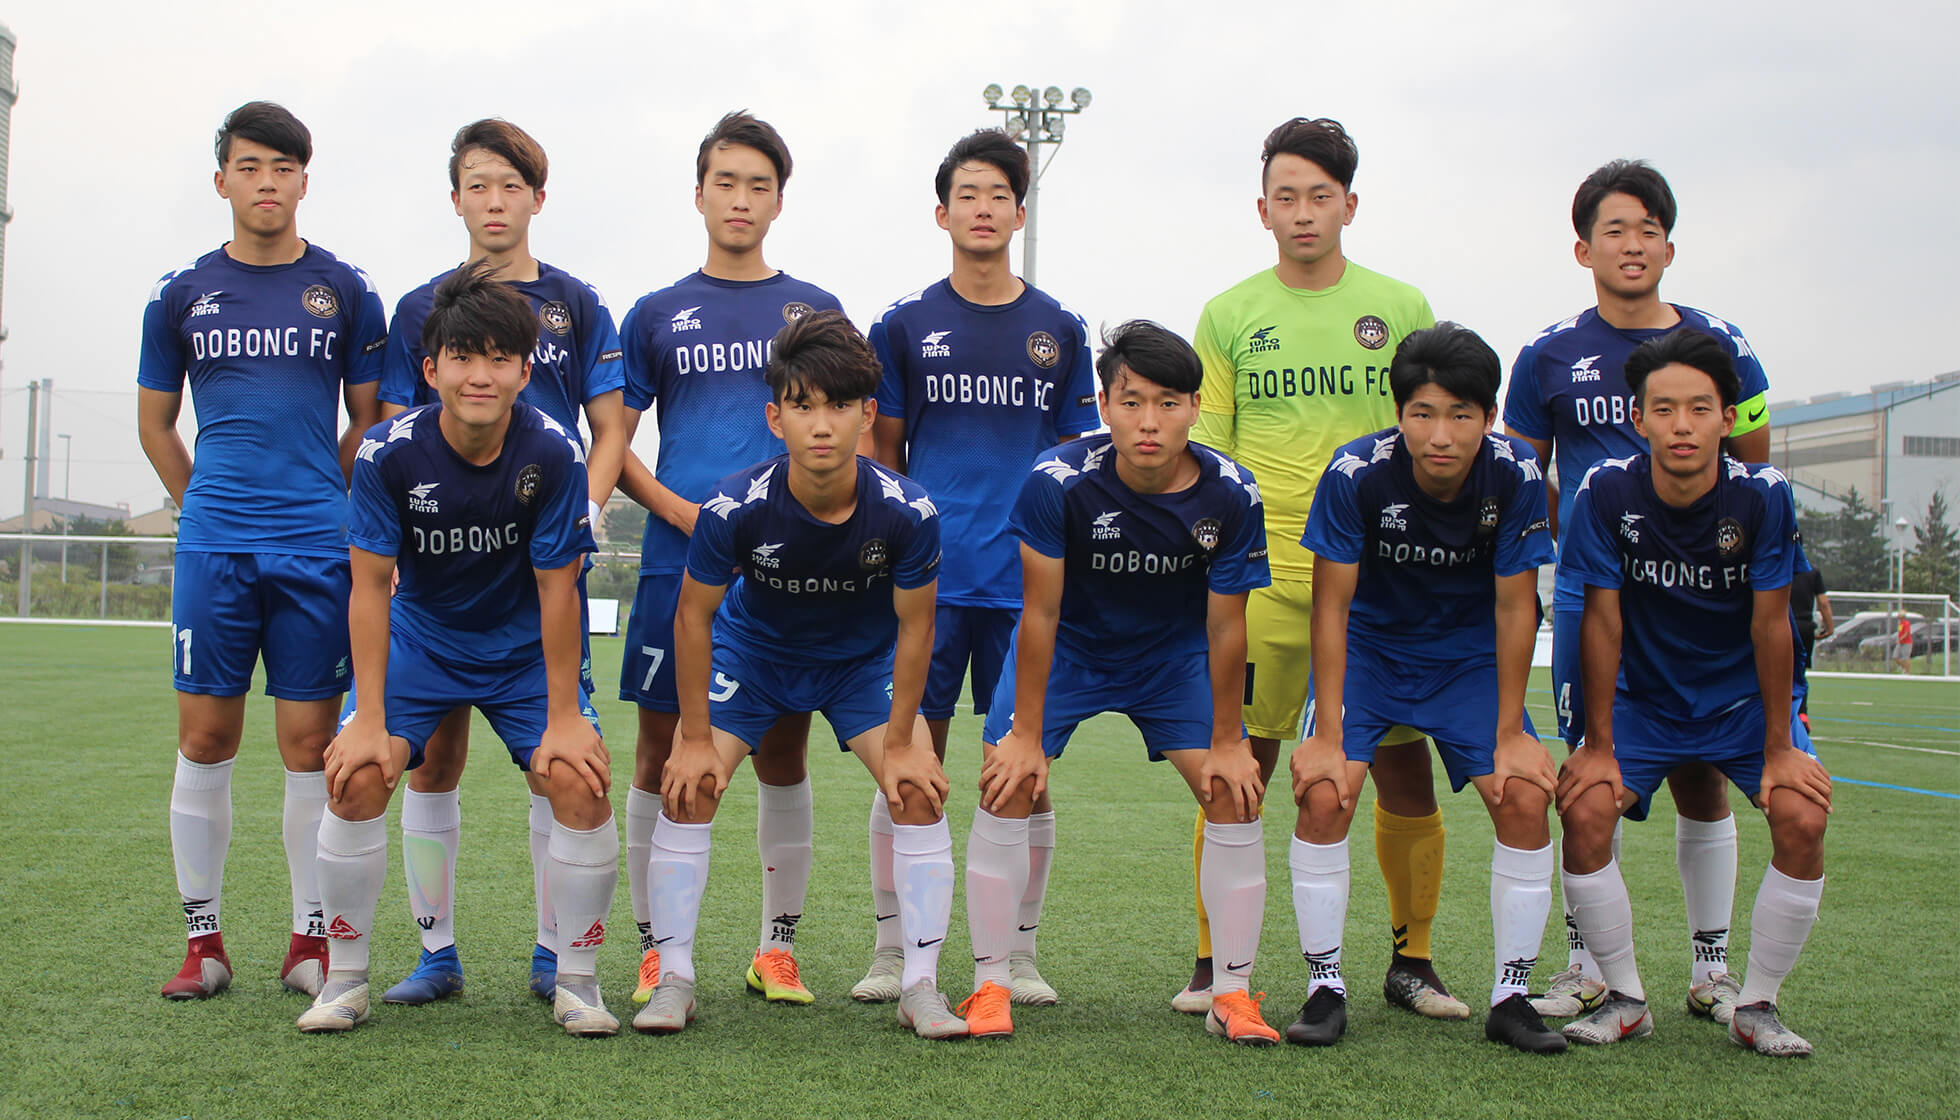 SEOUL DOBONG FC U-18